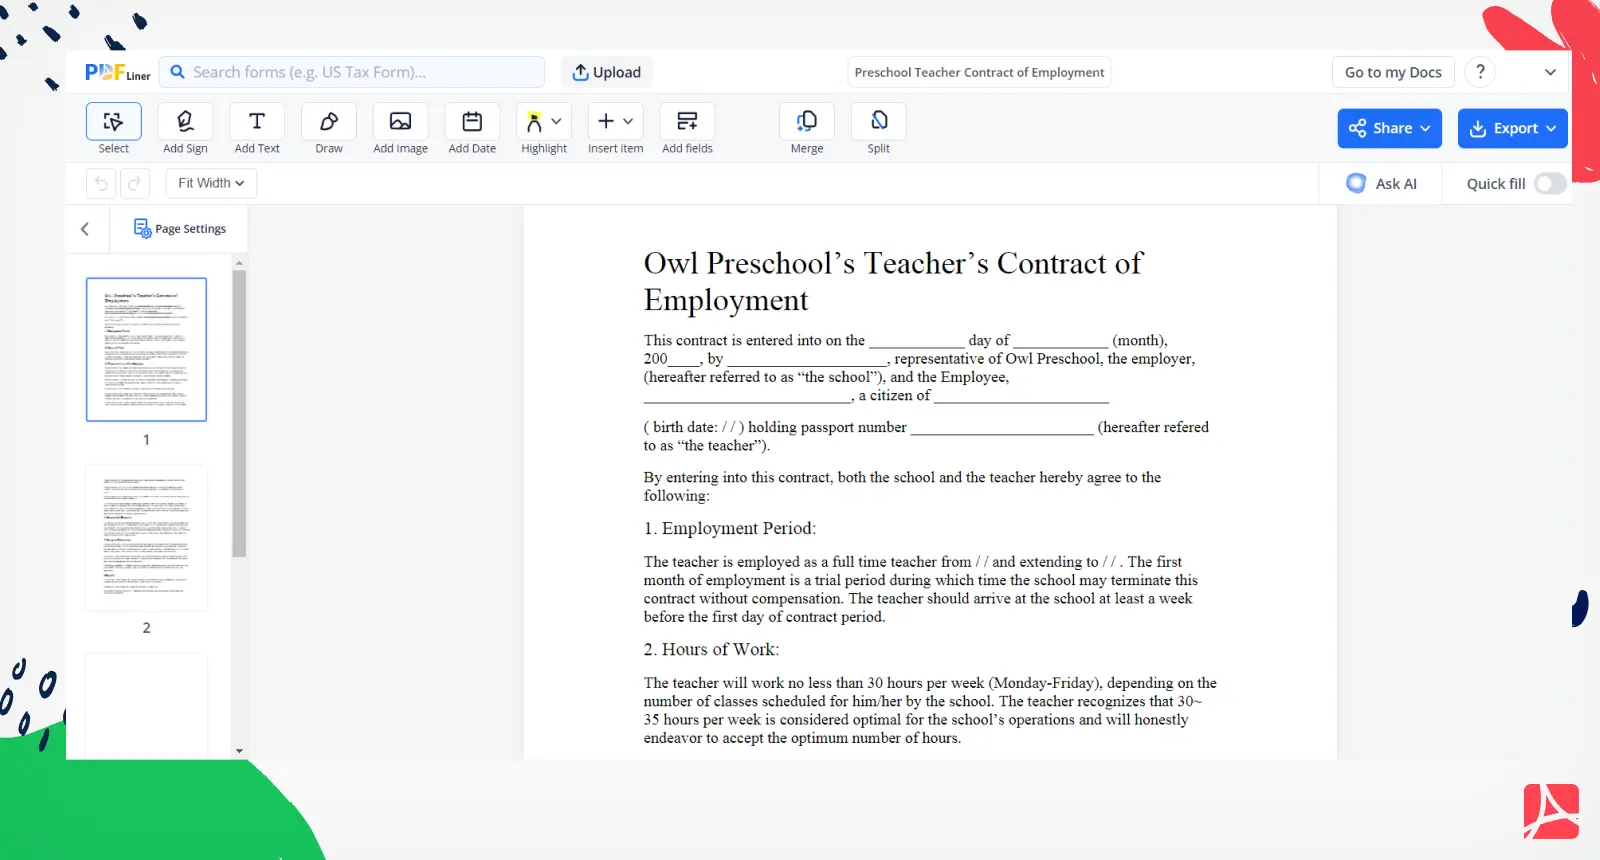 Preschool Teacher Contract of Employment Screenshot